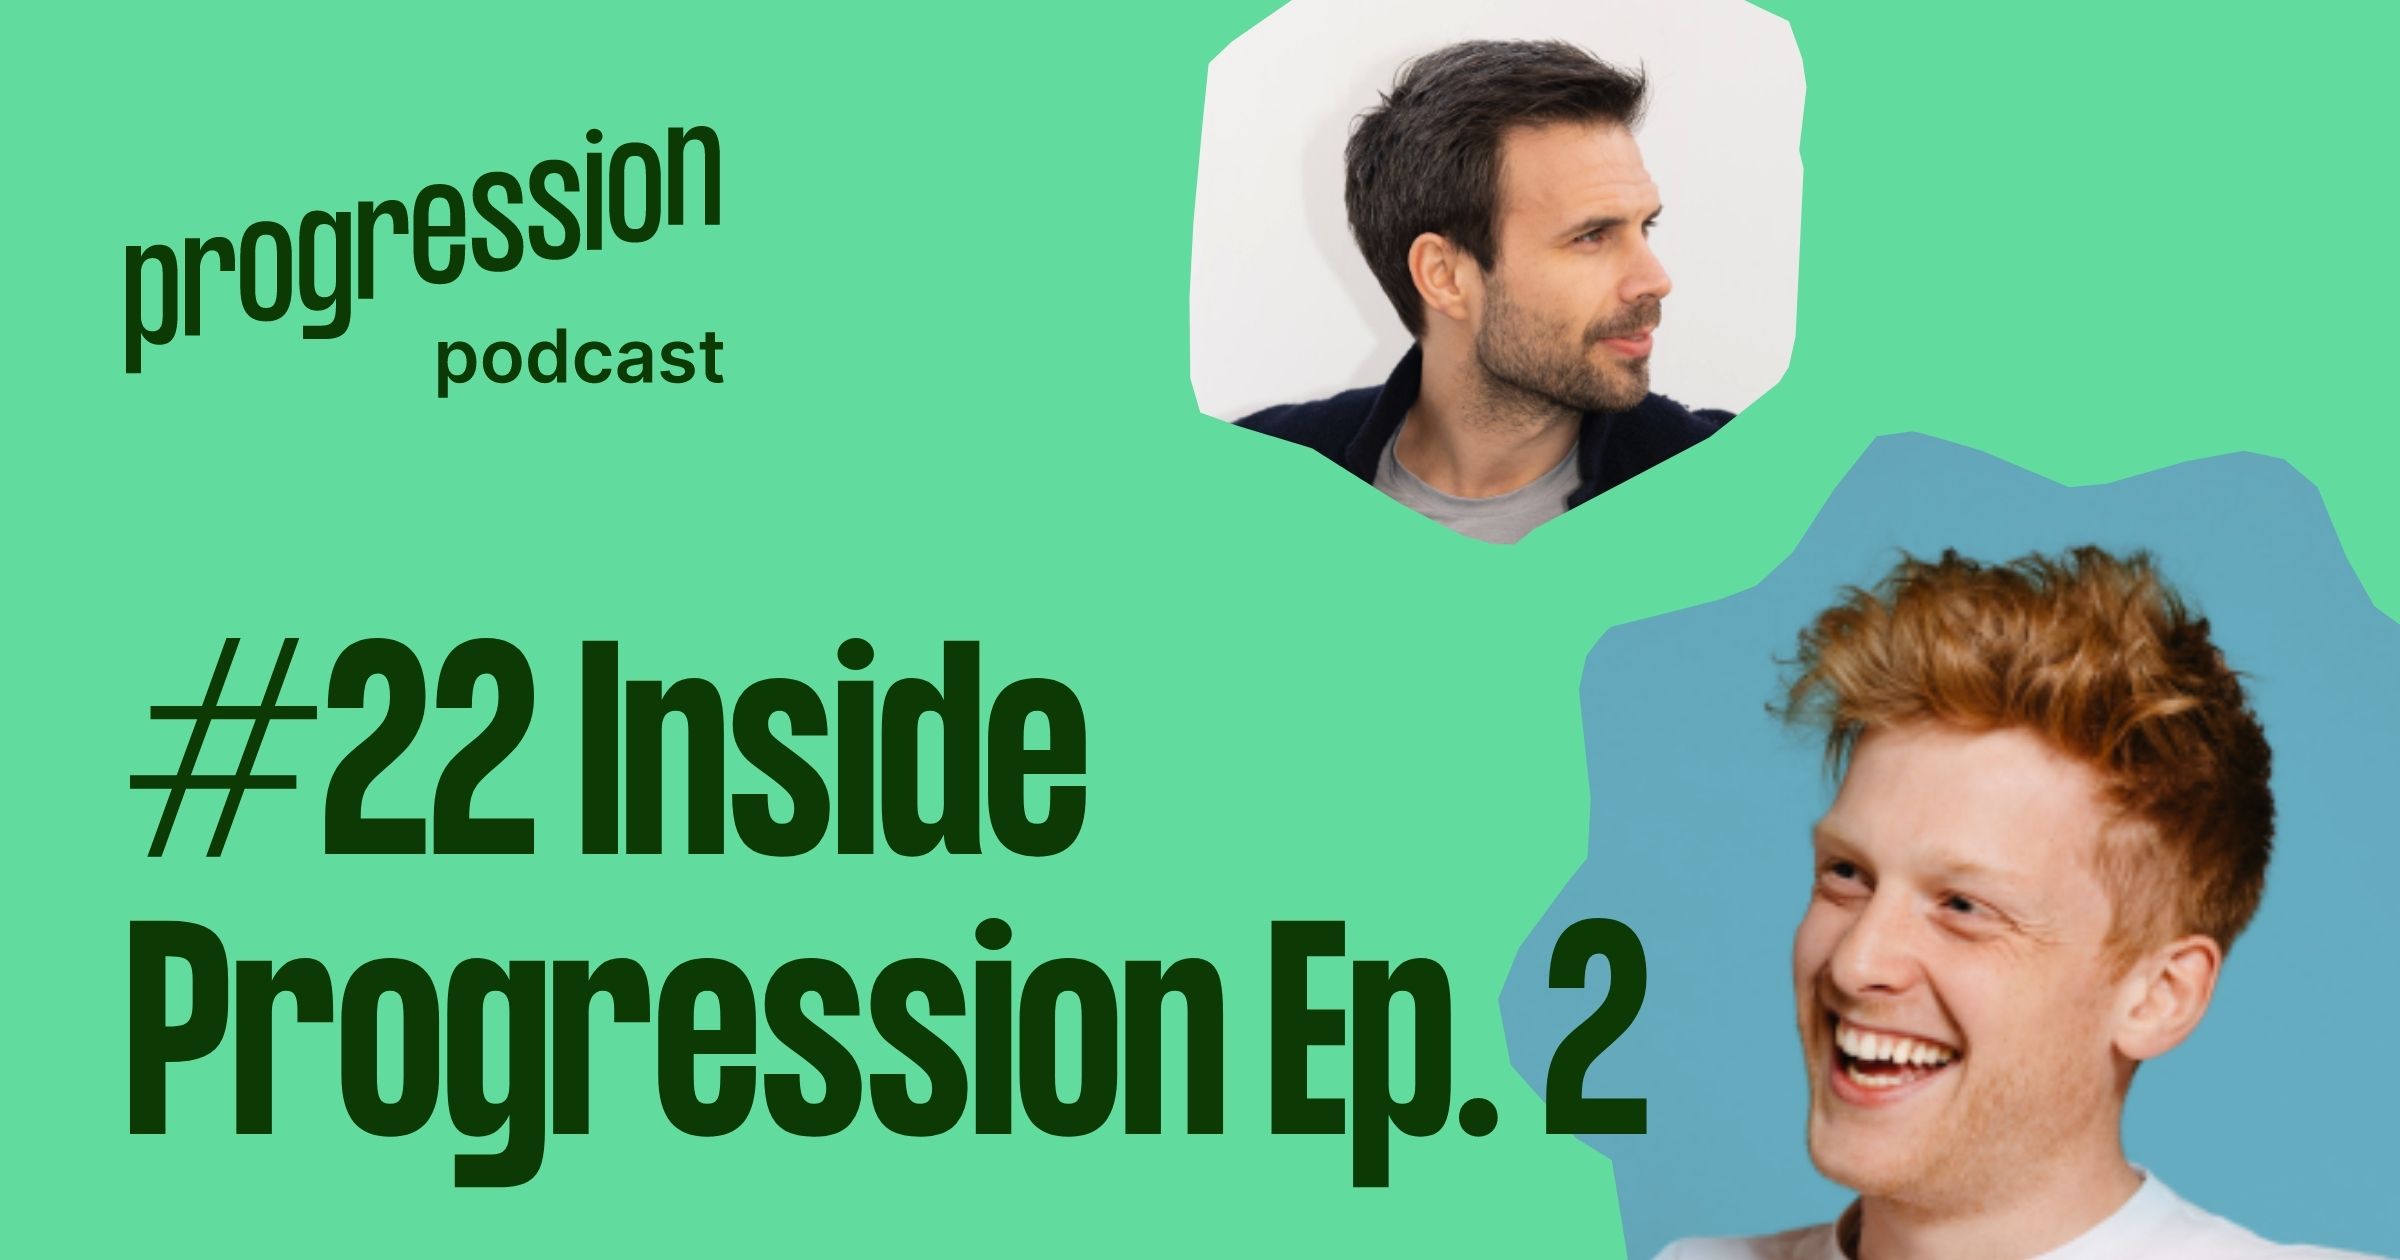 Podcast #22: Inside Progression Episode 2